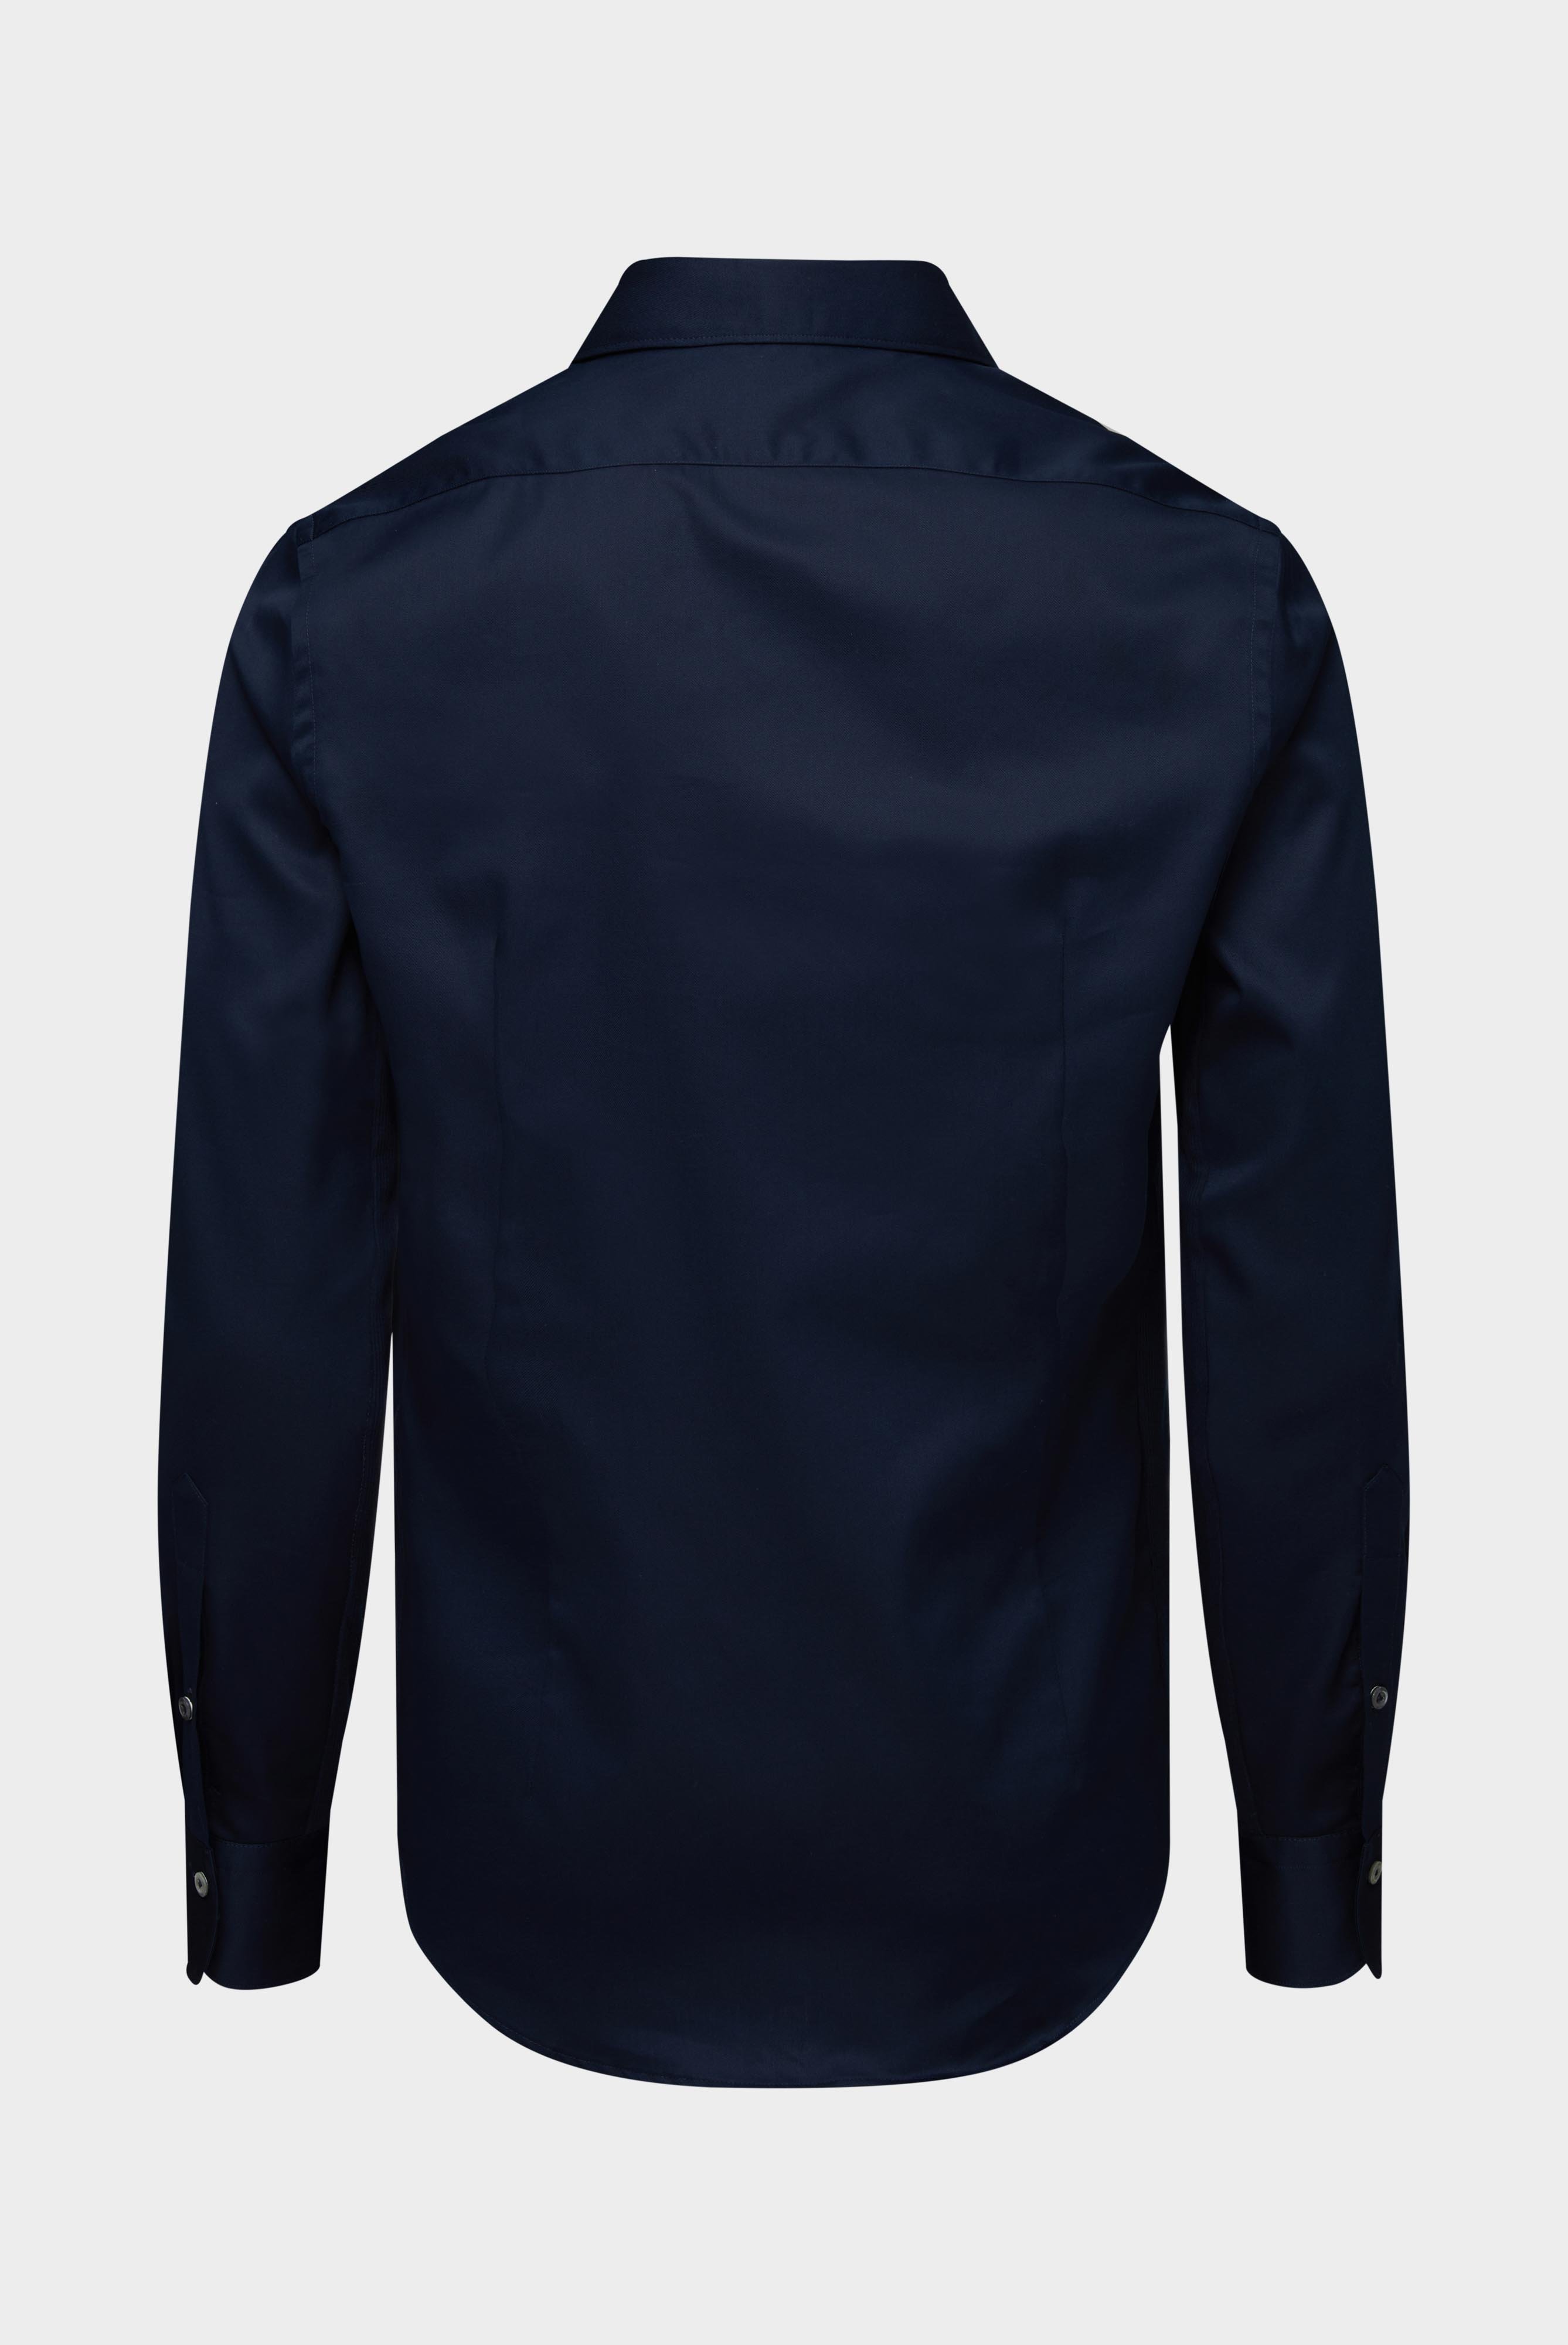 Bügelleichte Hemden+Bügelfreies Hybridshirt mit Jerseyeinsatz Slim Fit+20.2553.0F.132241.785.43